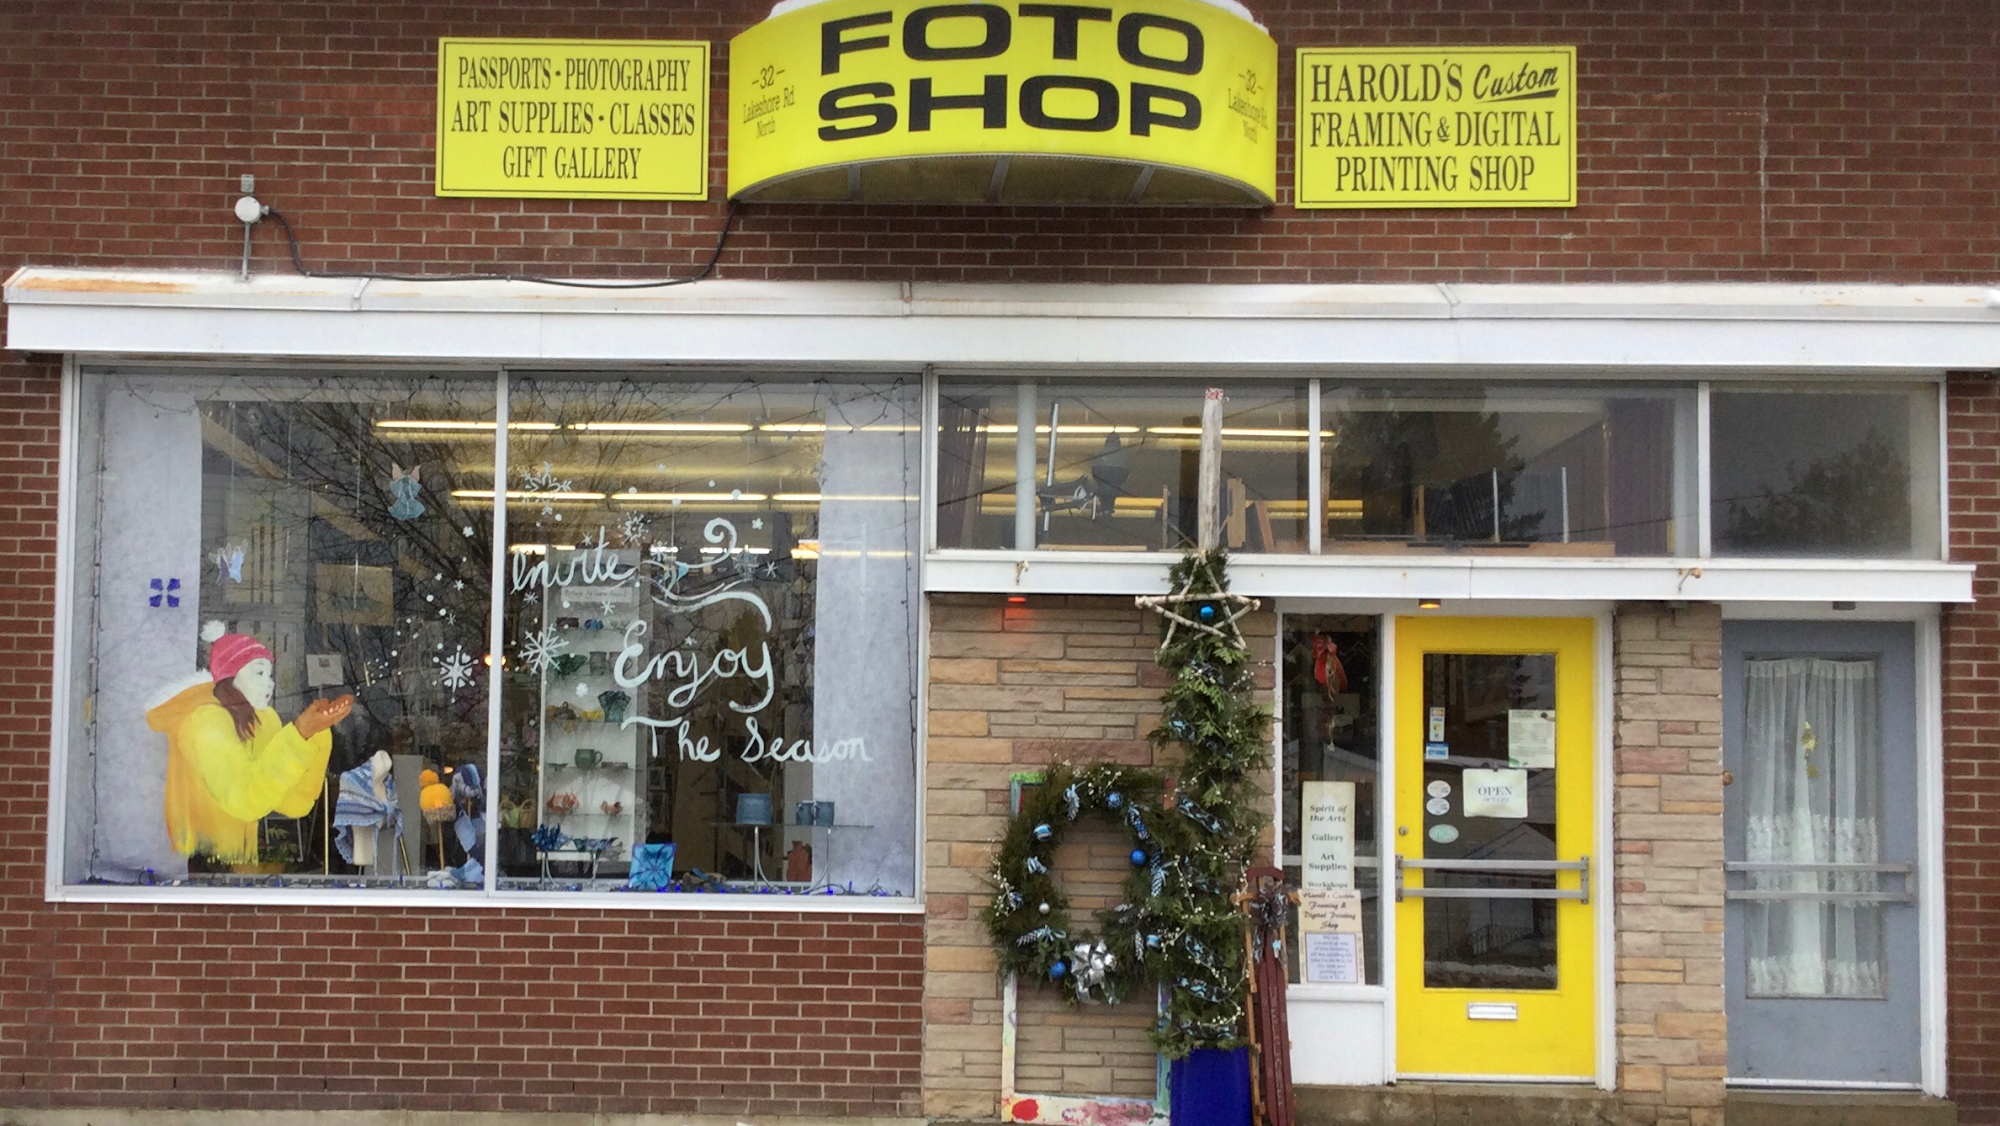 Foto Shop. Gallery 32 Lakeshore Rd N, New Liskeard Ontario P0J 1P0